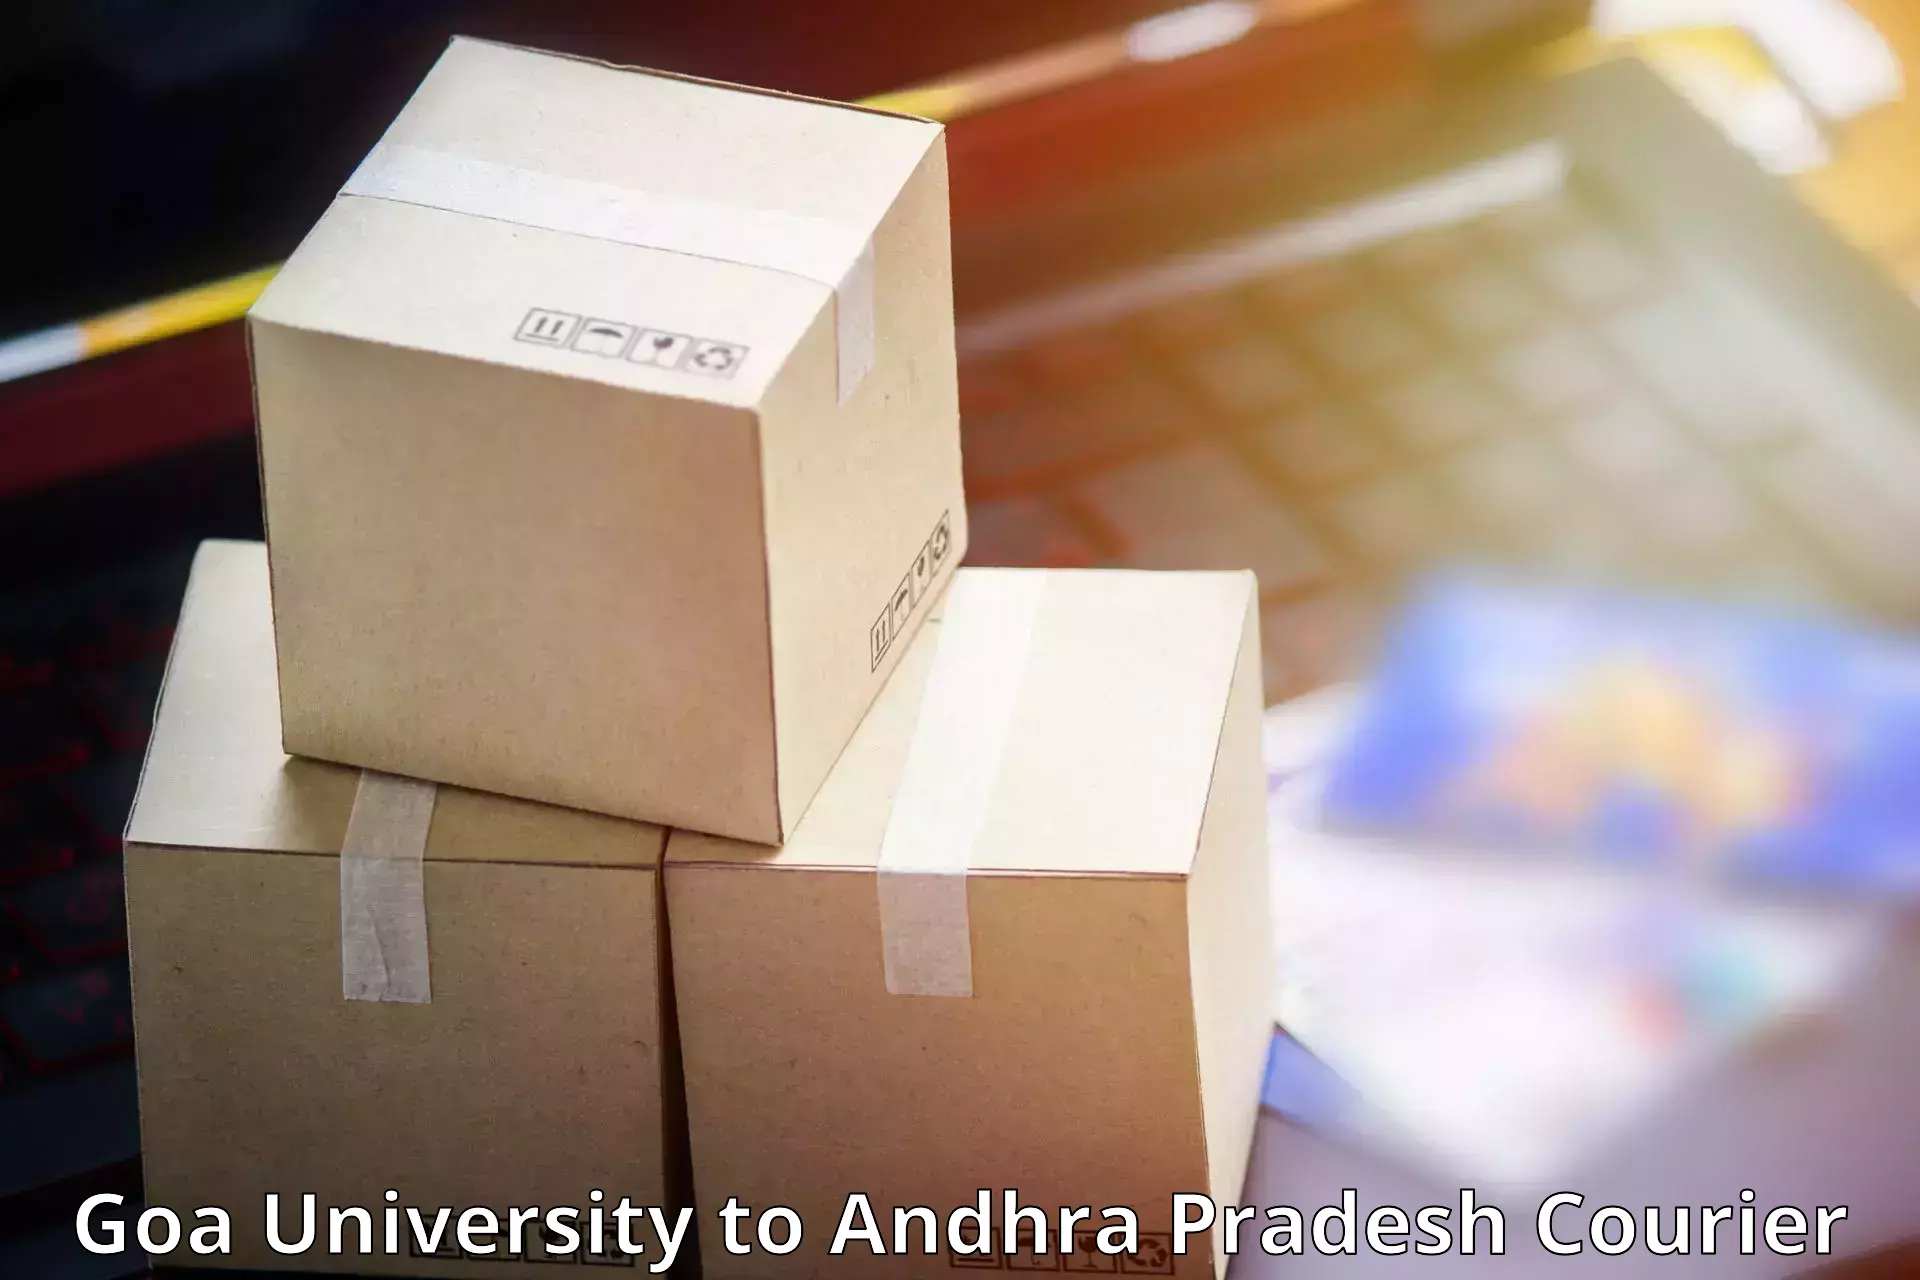 E-commerce logistics support Goa University to Koduru